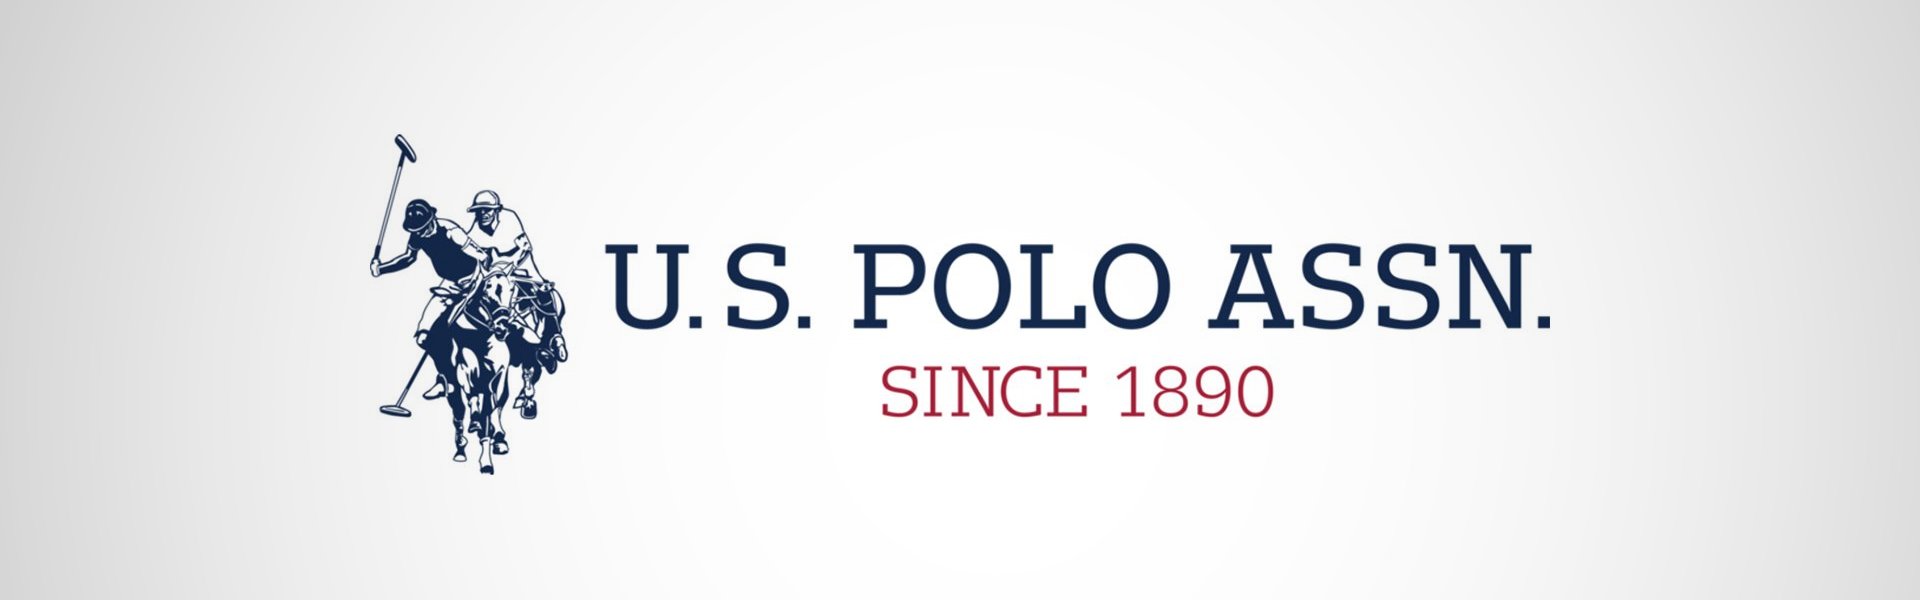 U.S. Polo miesten kengät Hummer, valkoinen-tummansininen U. S. Polo Assn.